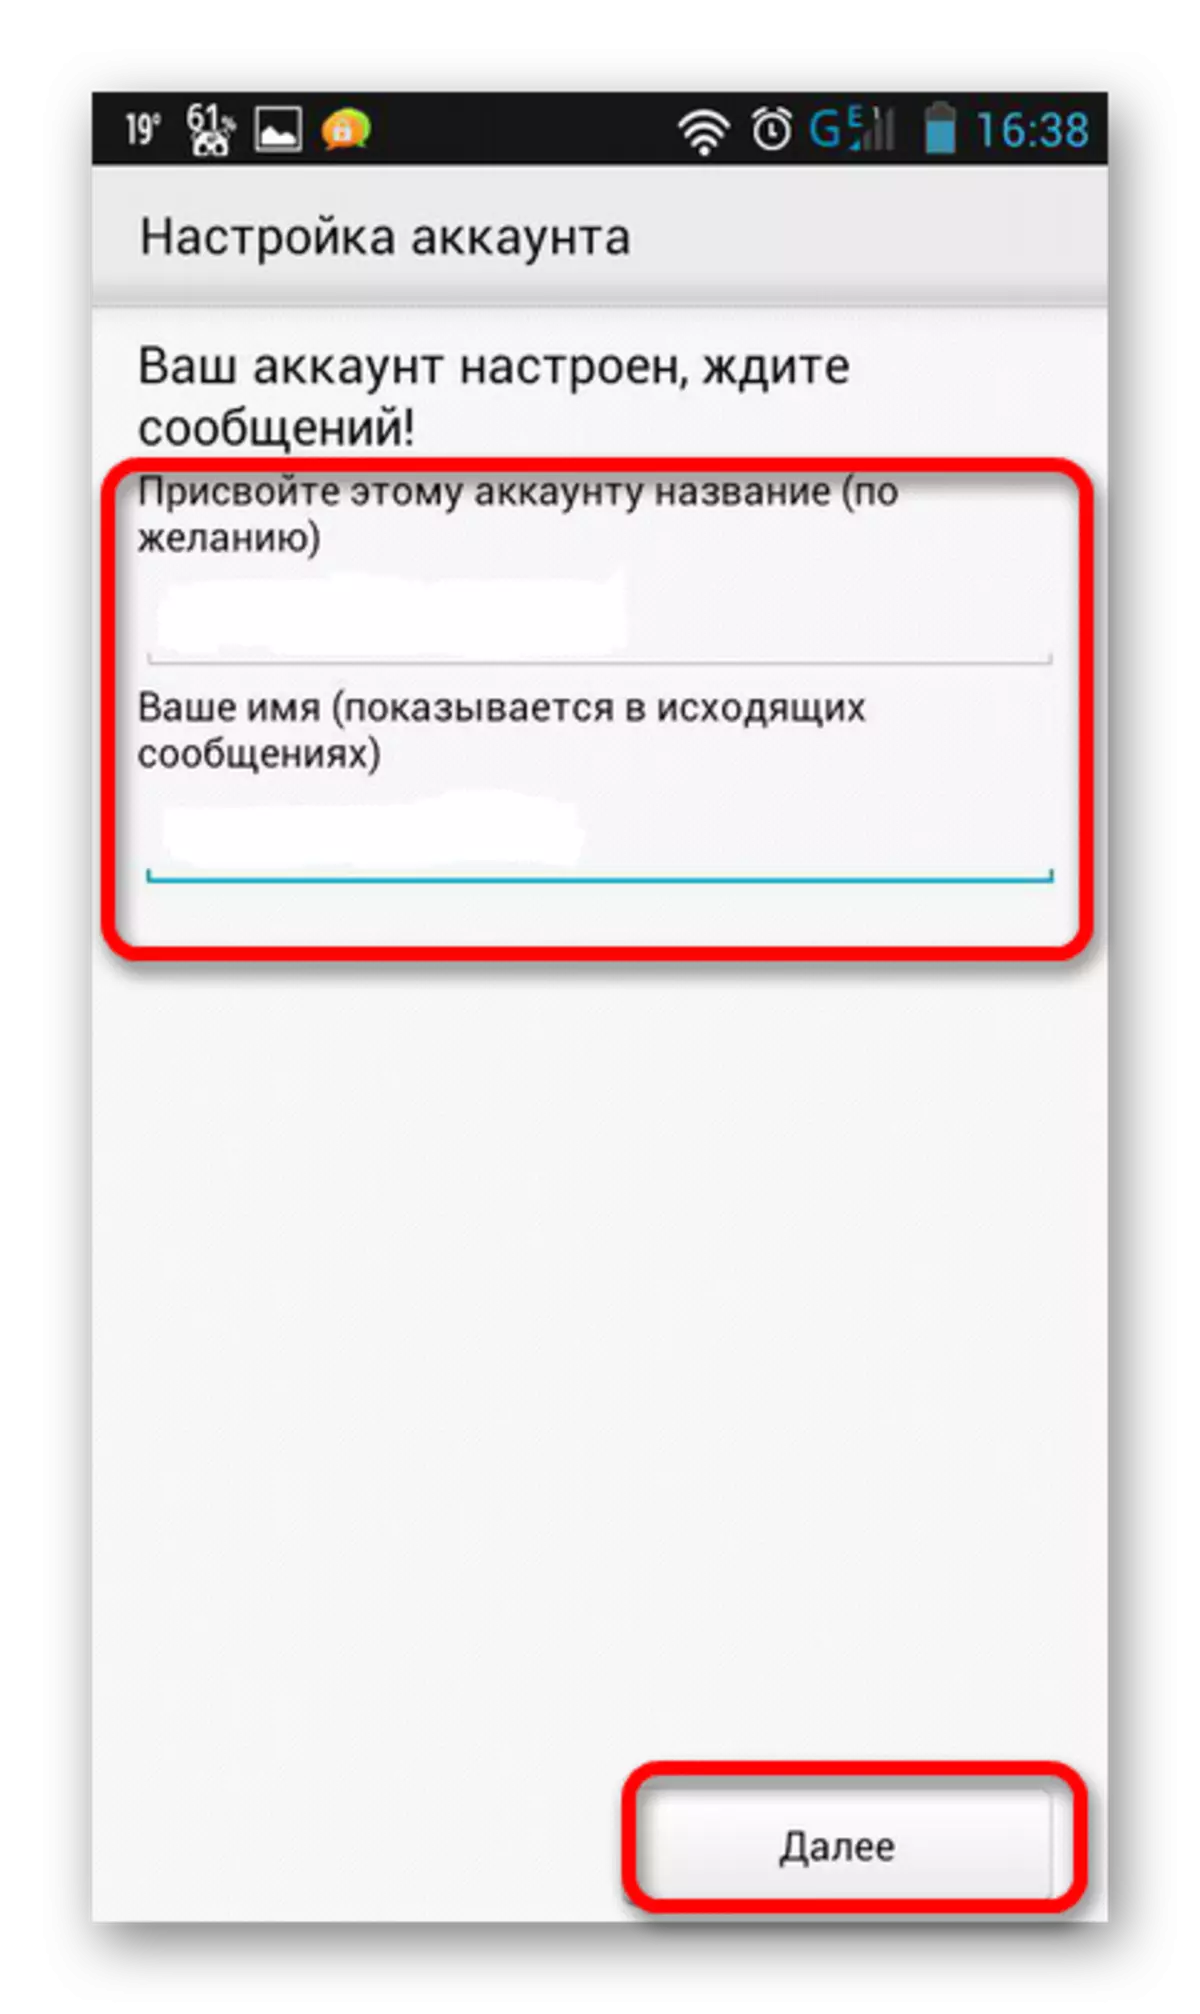 Nosaukums un konta nosaukums Yandex Mail